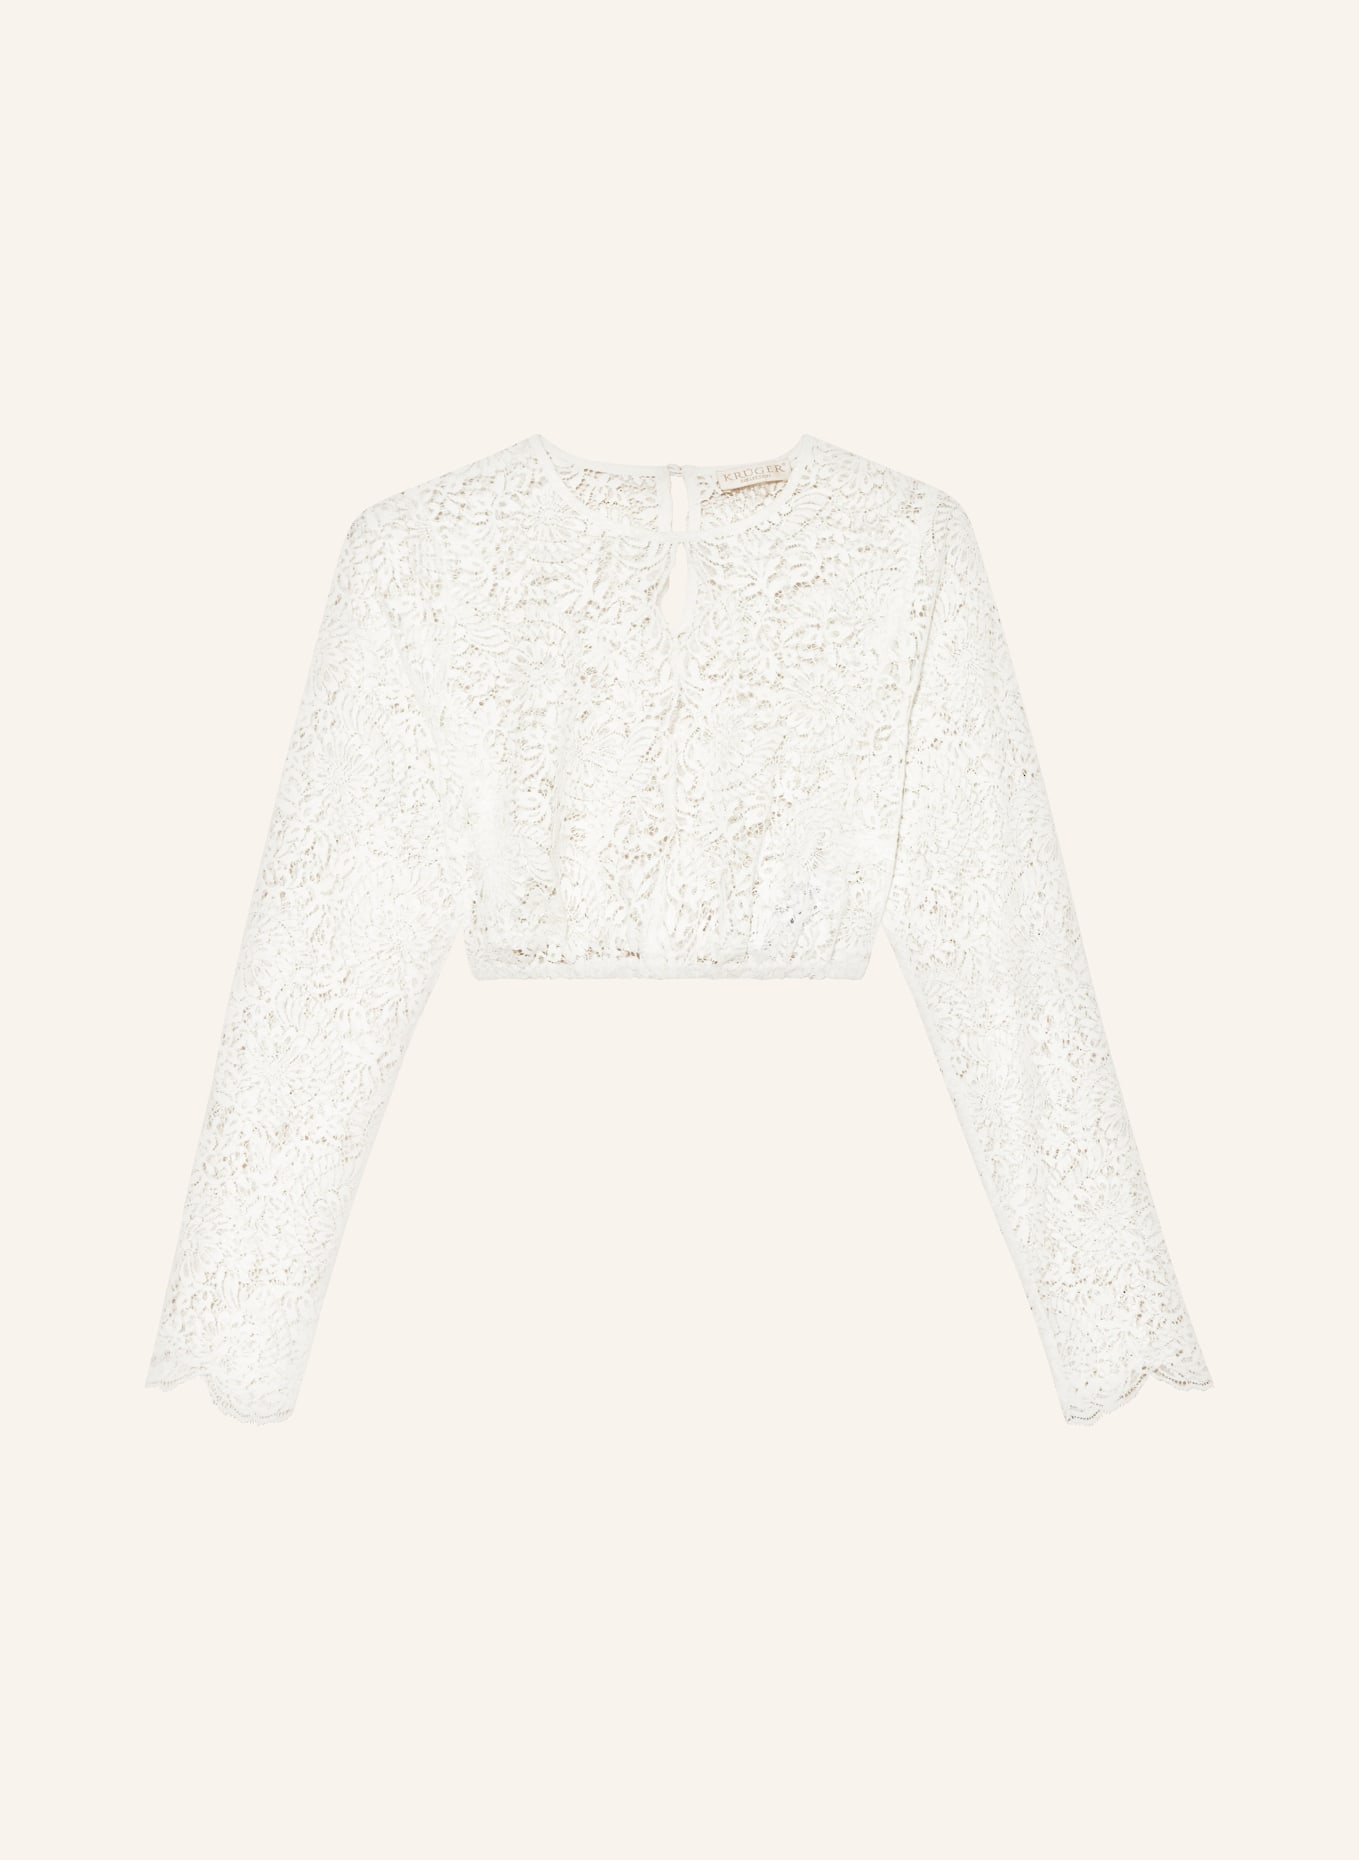 KRÜGER Dirndl blouse made of lace, Color: ECRU (Image 1)